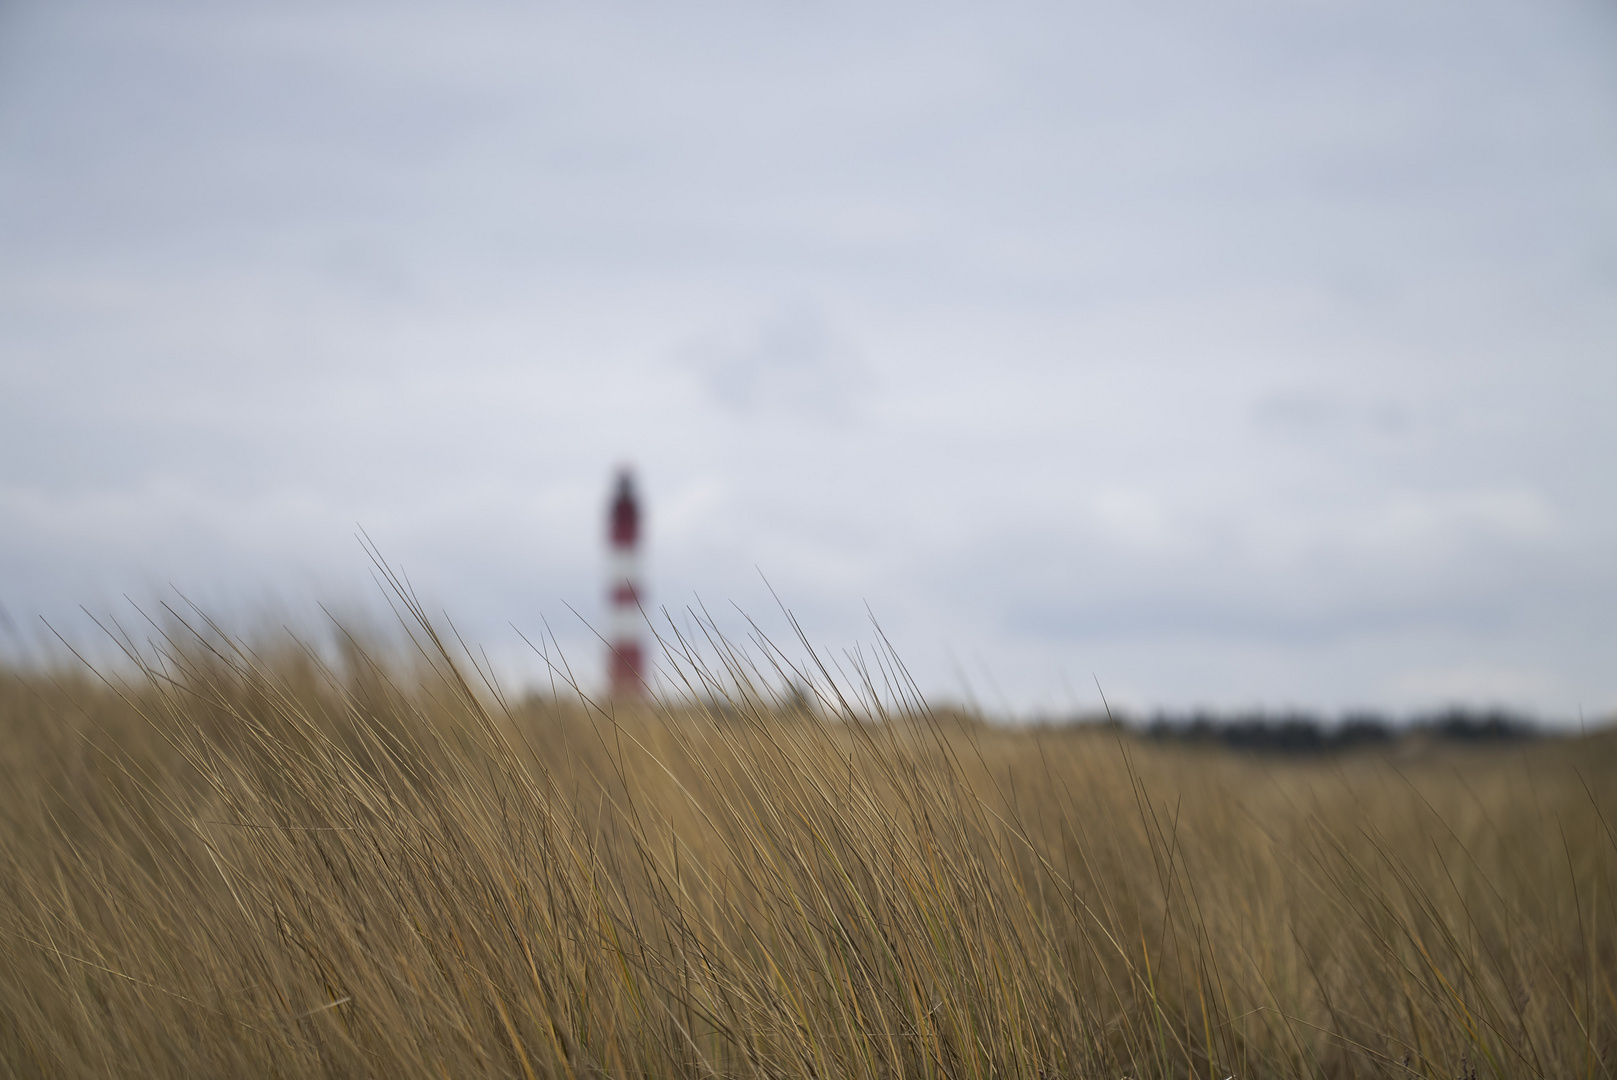 Dünengräser mit Amrumer Leuchtturm im Hintergrund